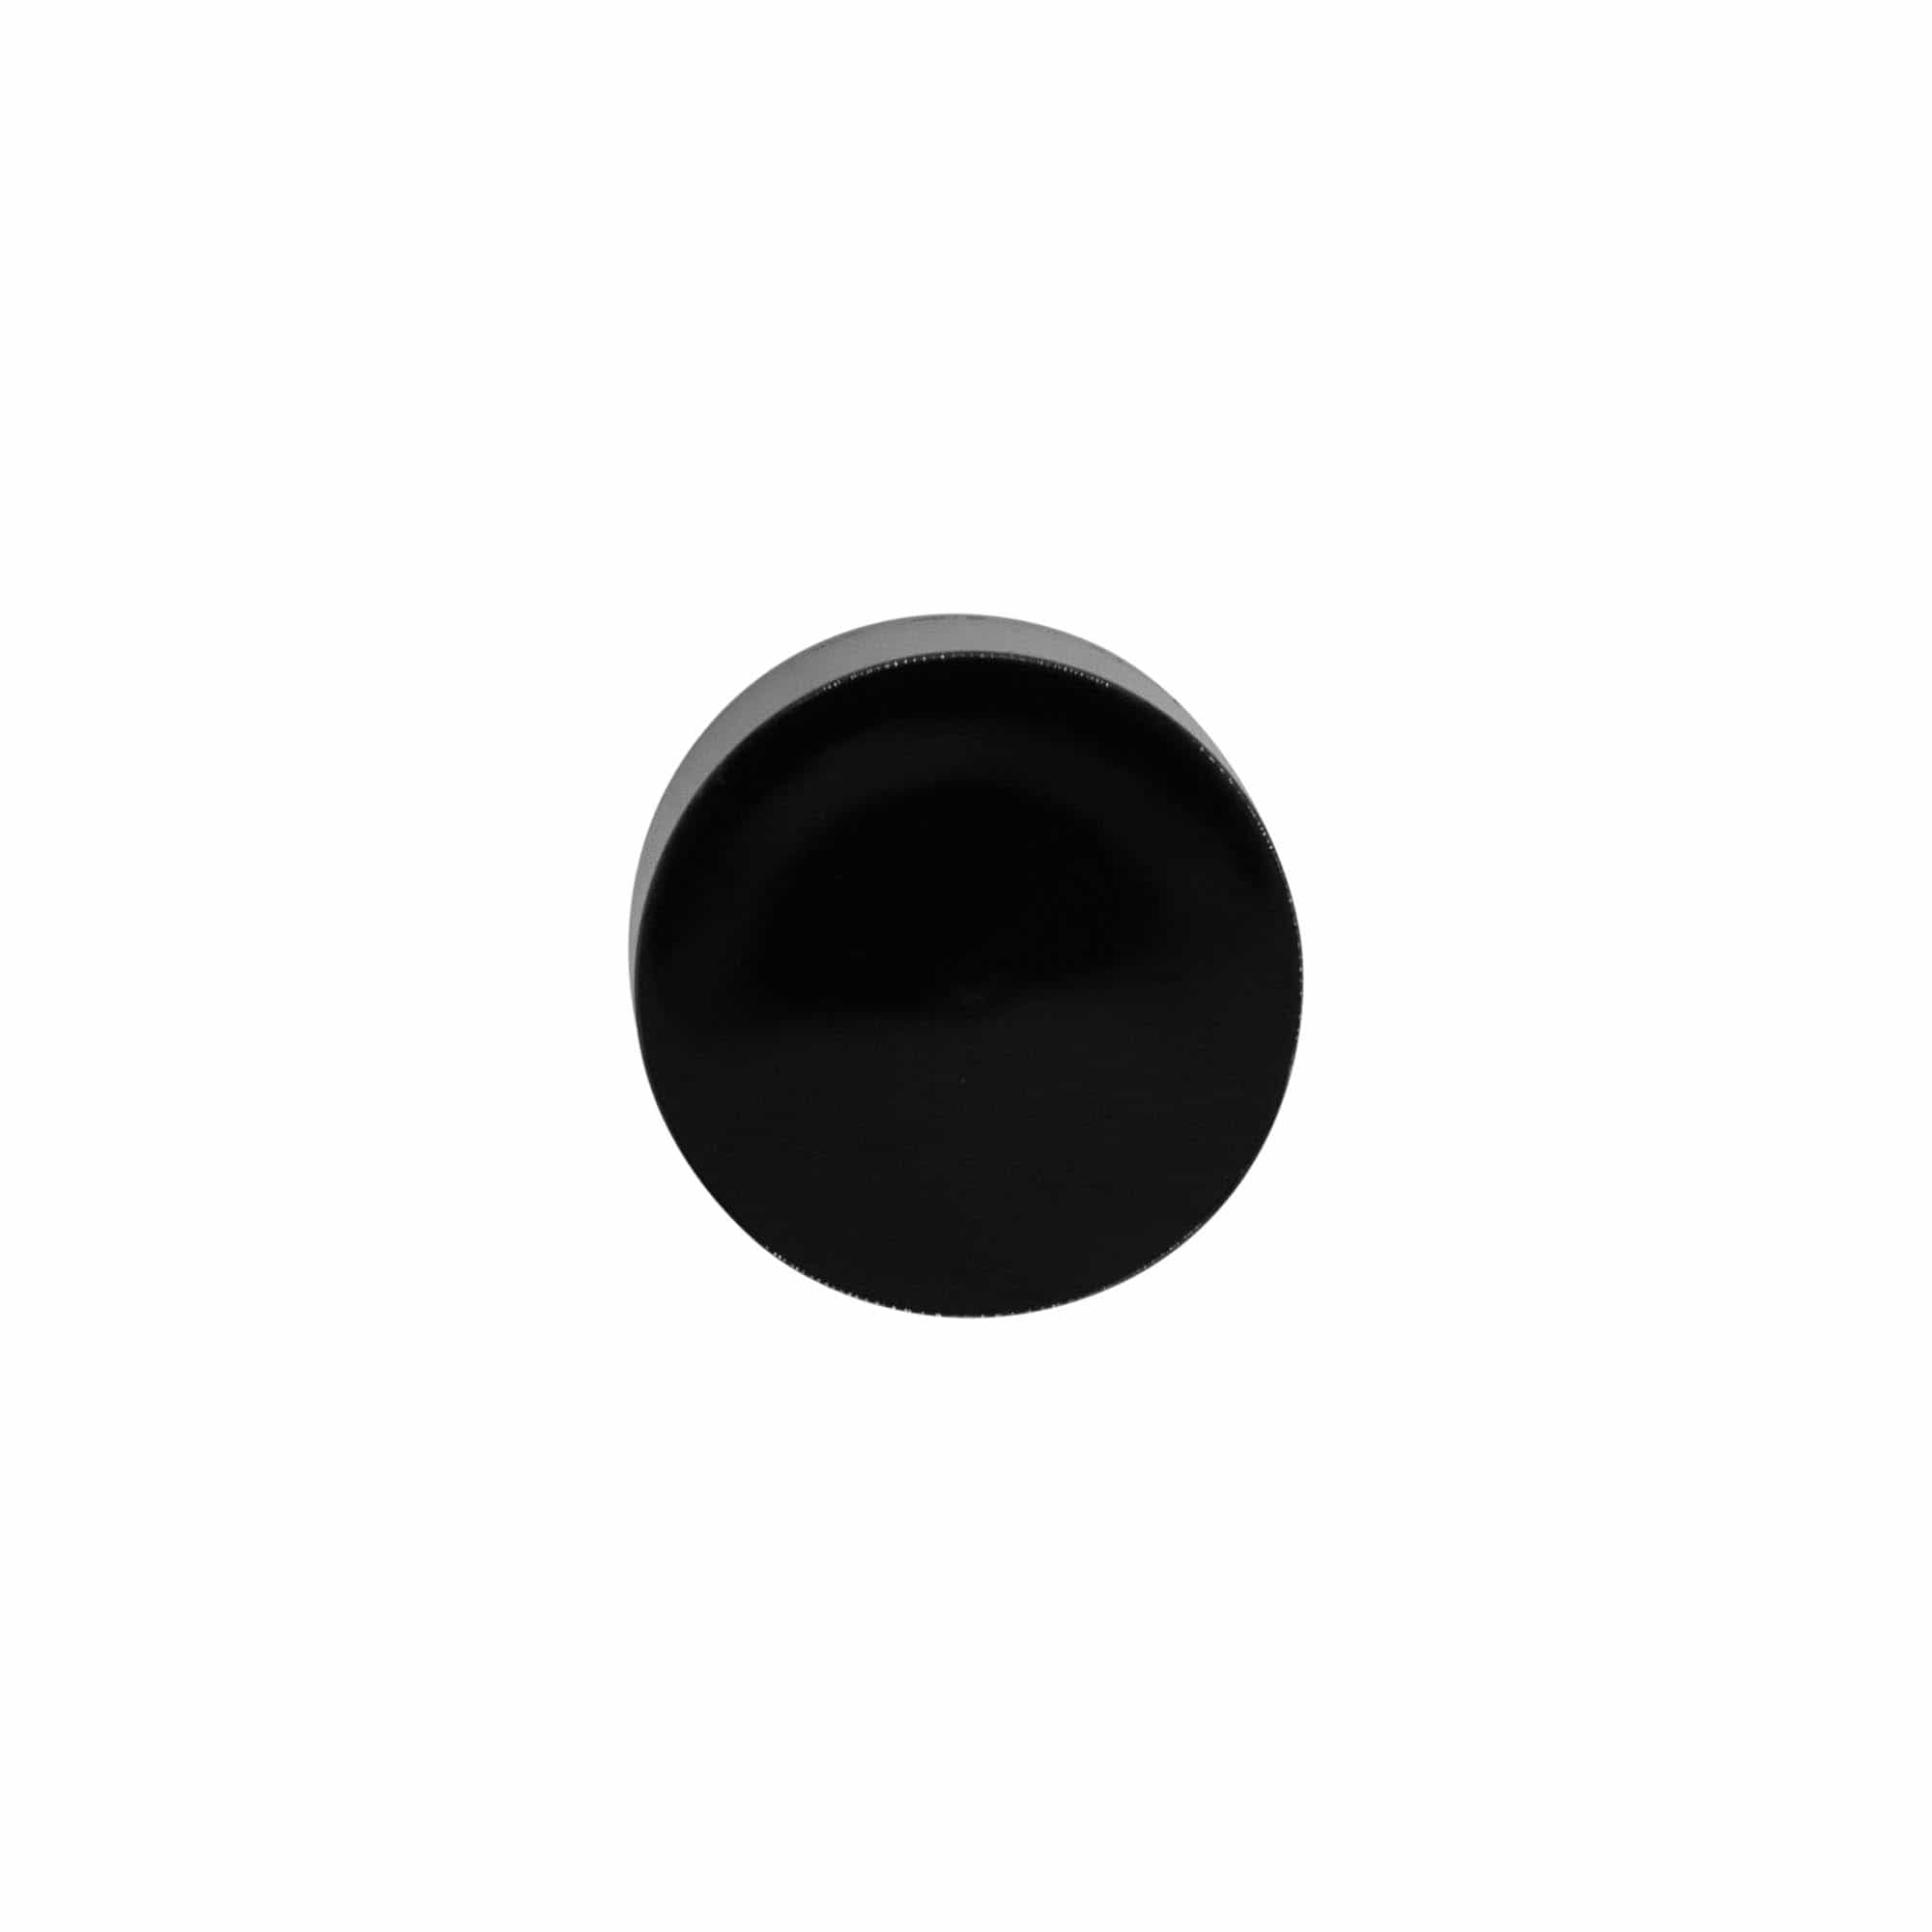 Pompkop voor Airless Dispenser 'Micro', PP-kunststof, zwart